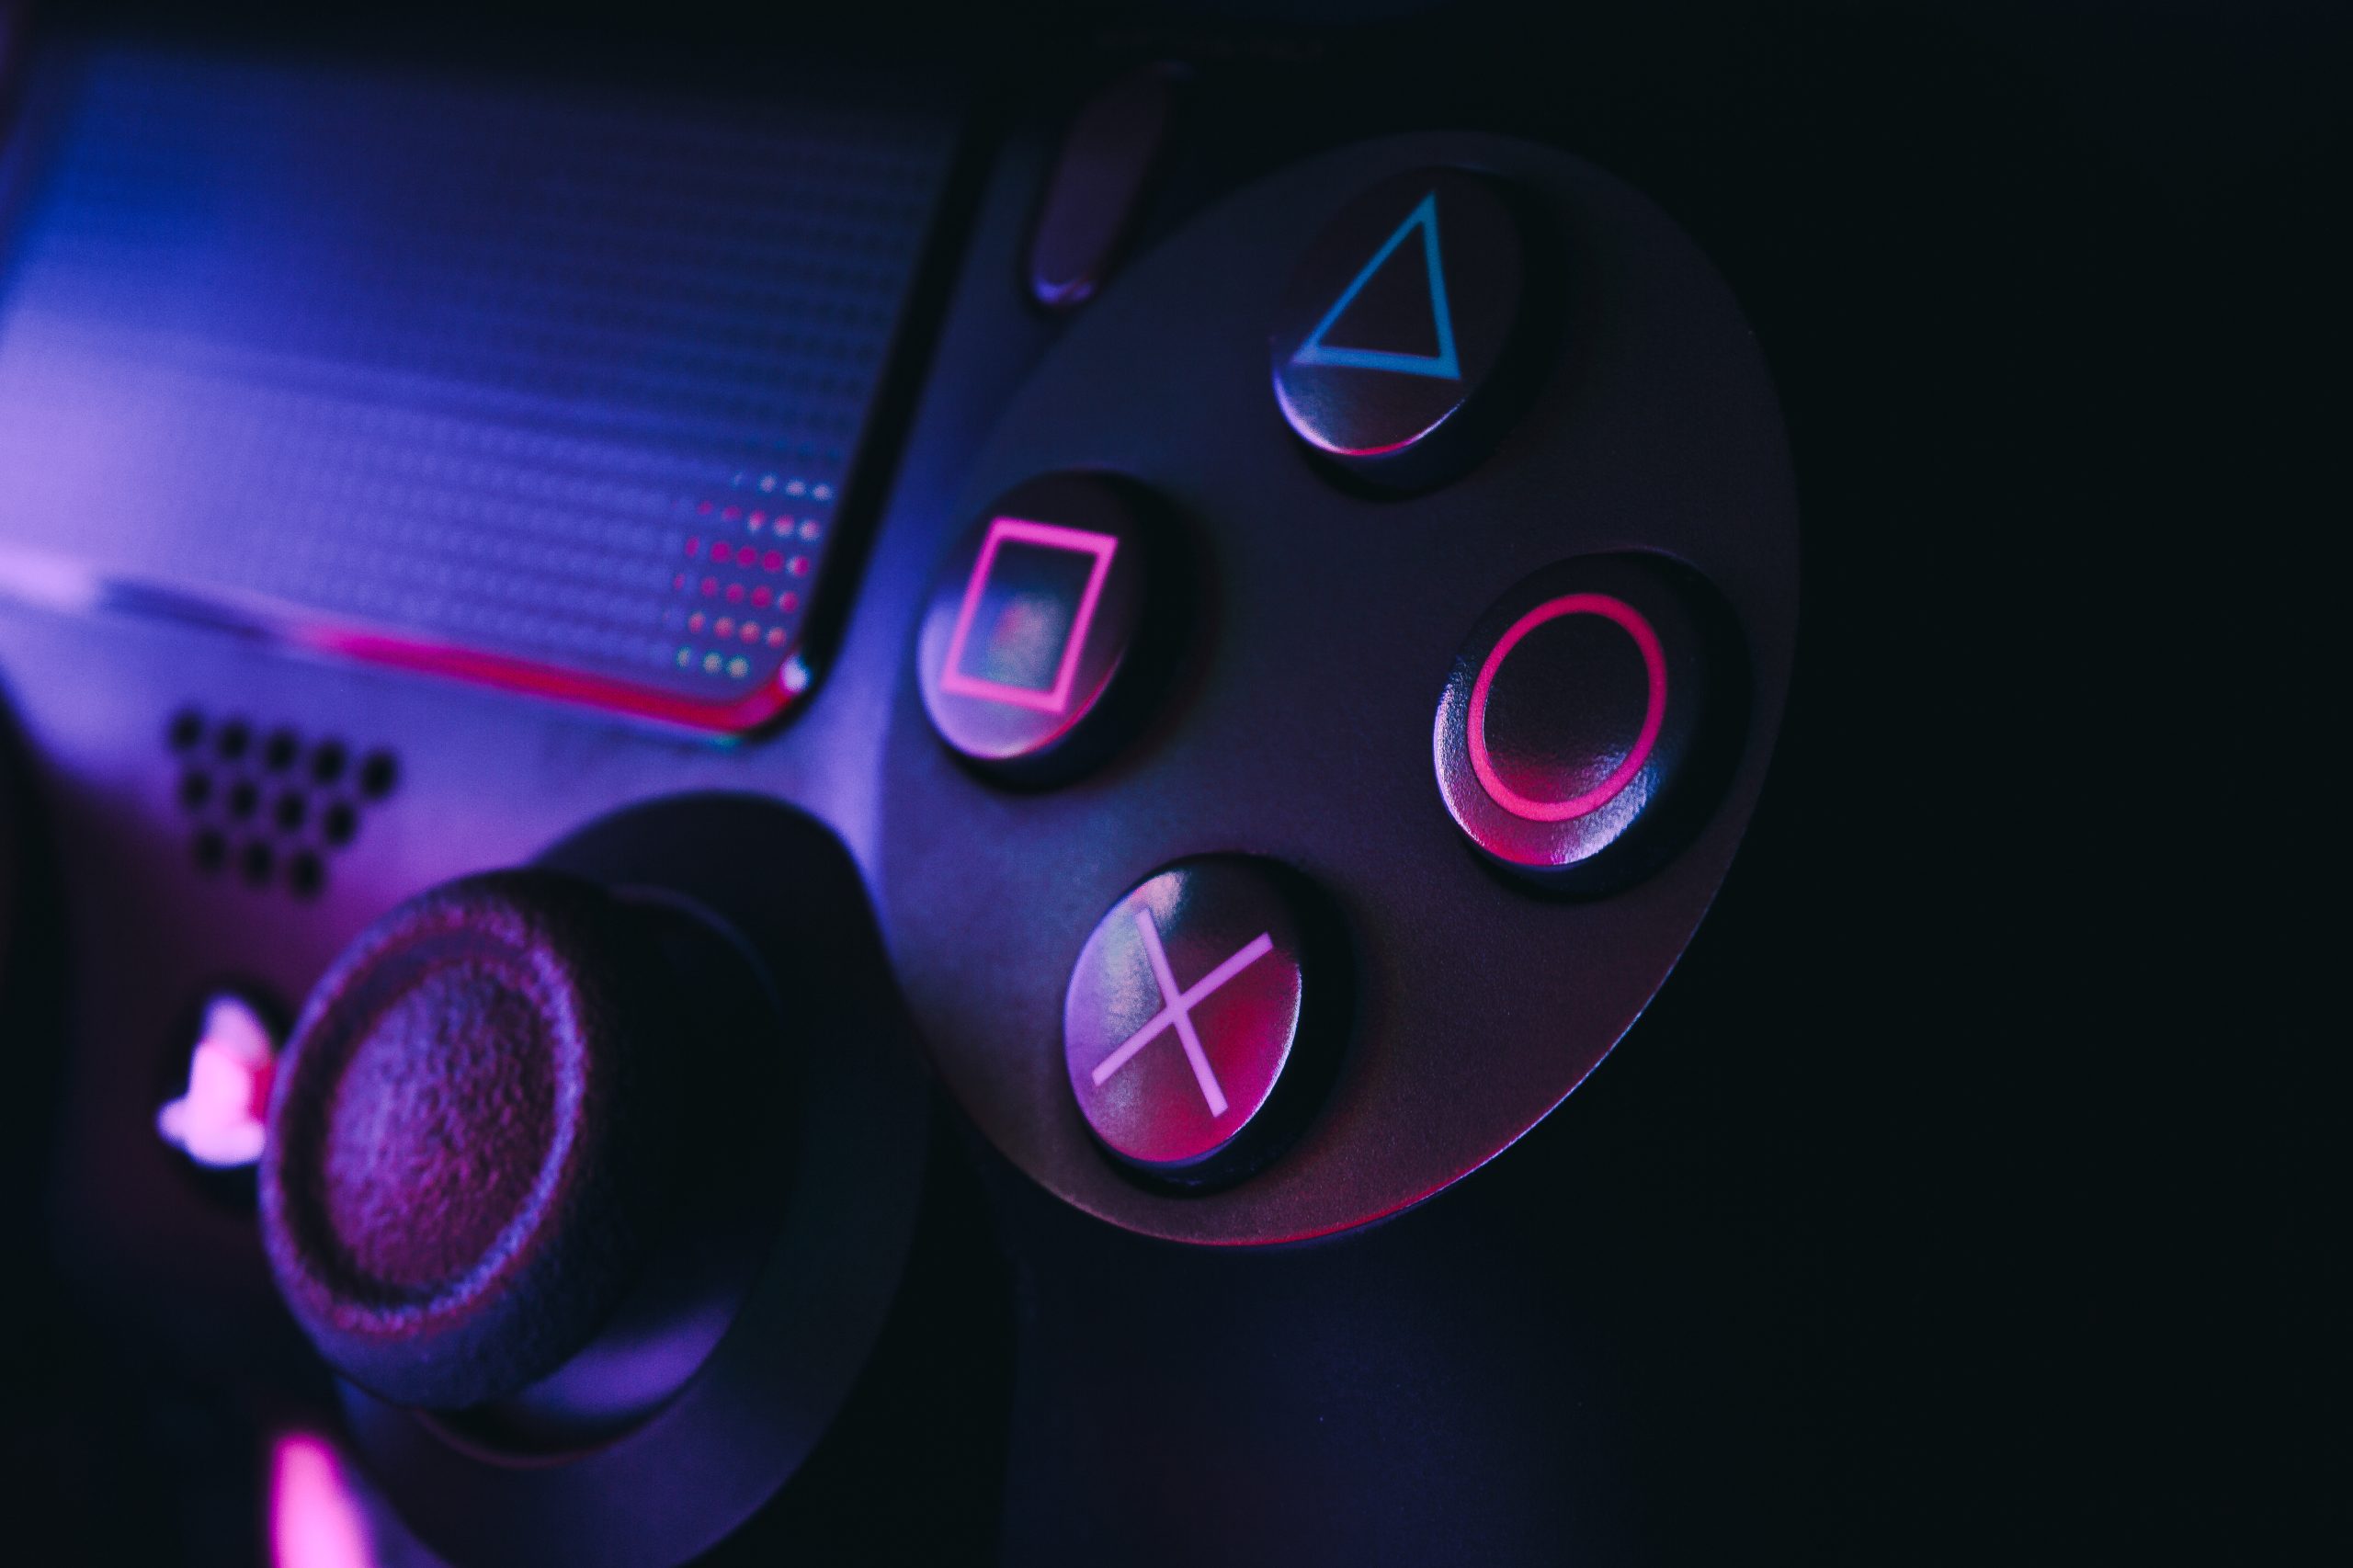 Imagem mostra o DualShock 4, controle do PlayStation 4